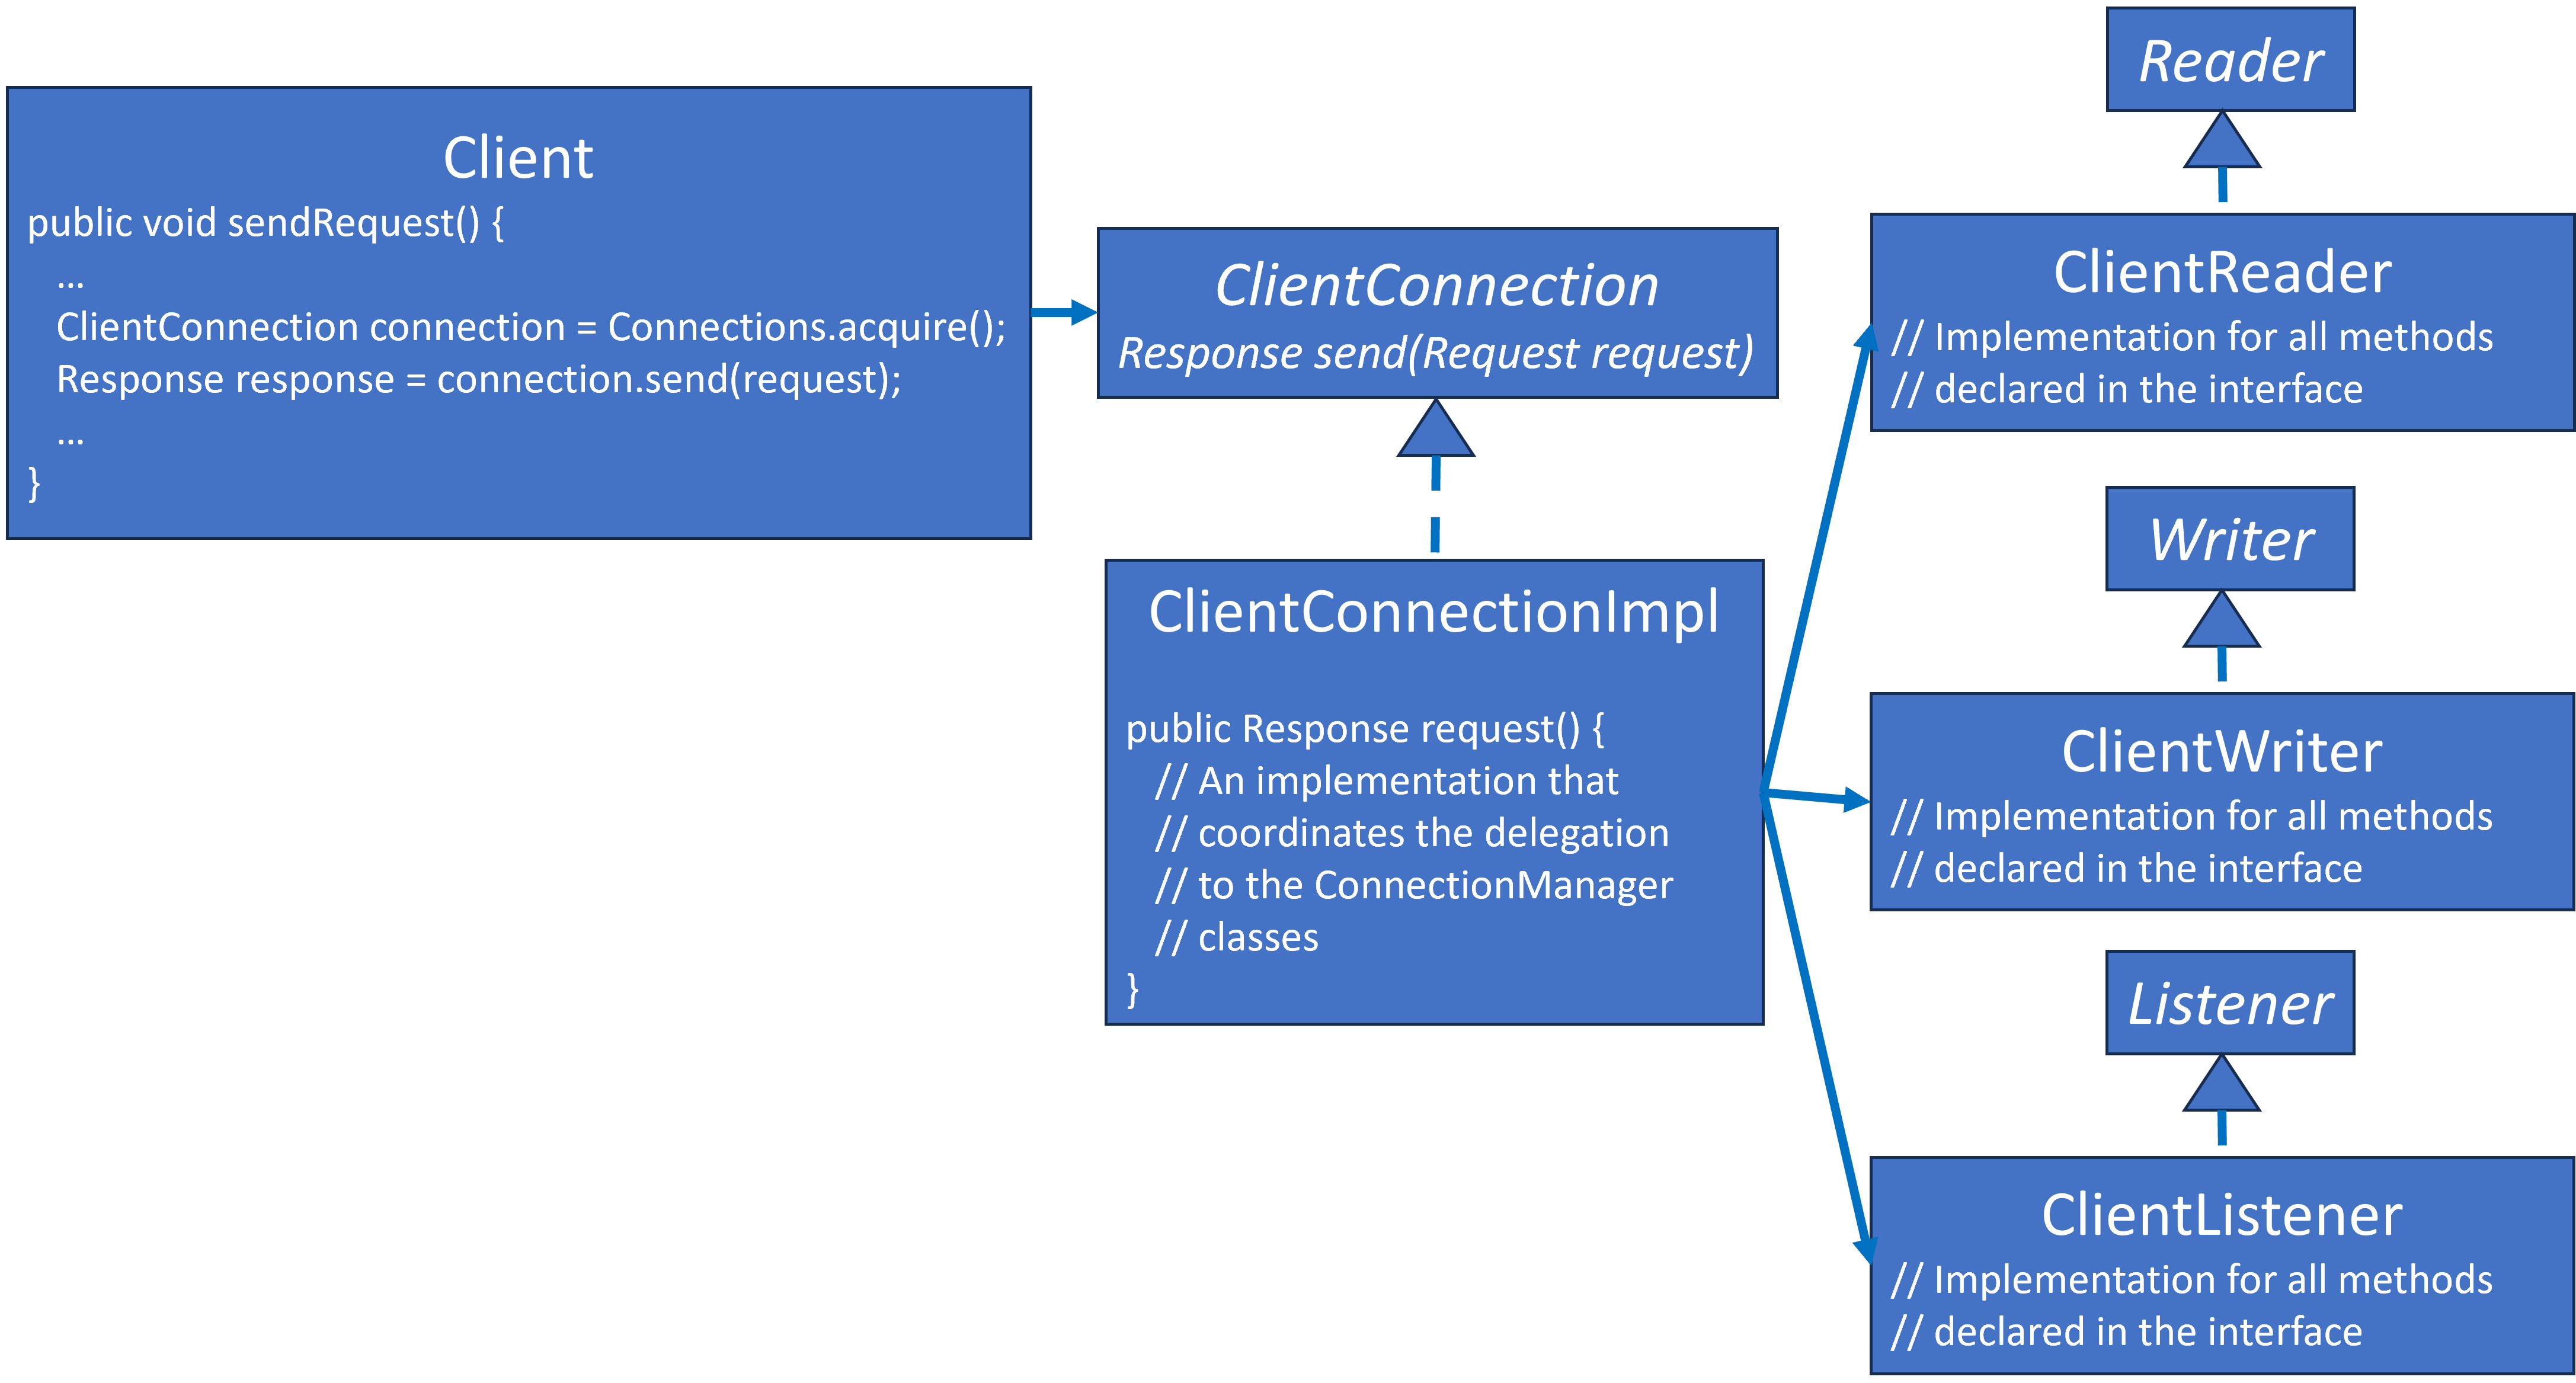 ClientConnection UML Class Diagram